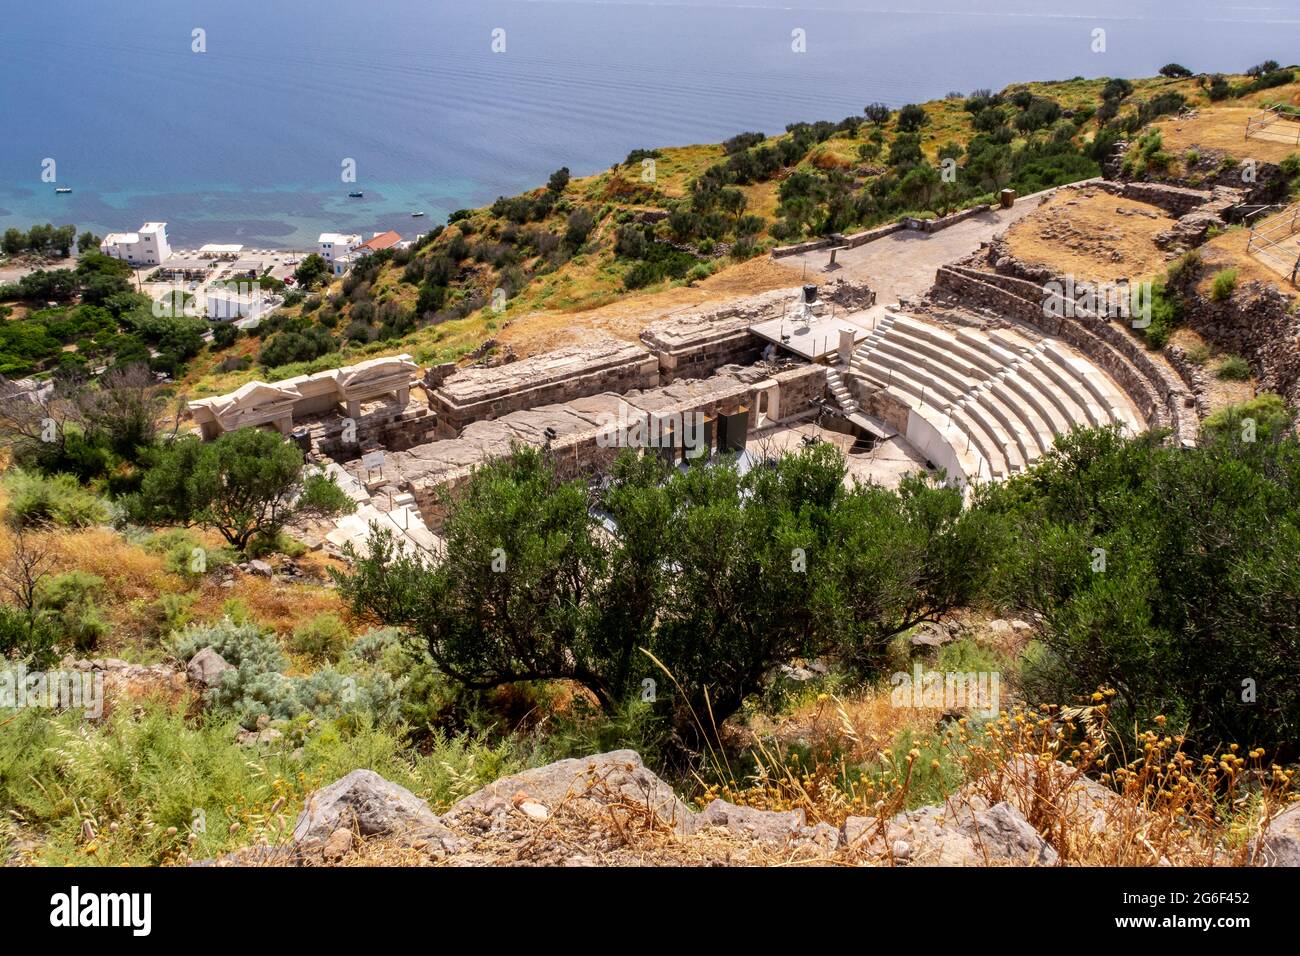 Ruines de l'ancien théâtre de Milos sur une colline verdoyante avec la mer Méditerranée en arrière-plan près de la ville de Trypiti sur l'île de Milos, Grèce. Banque D'Images